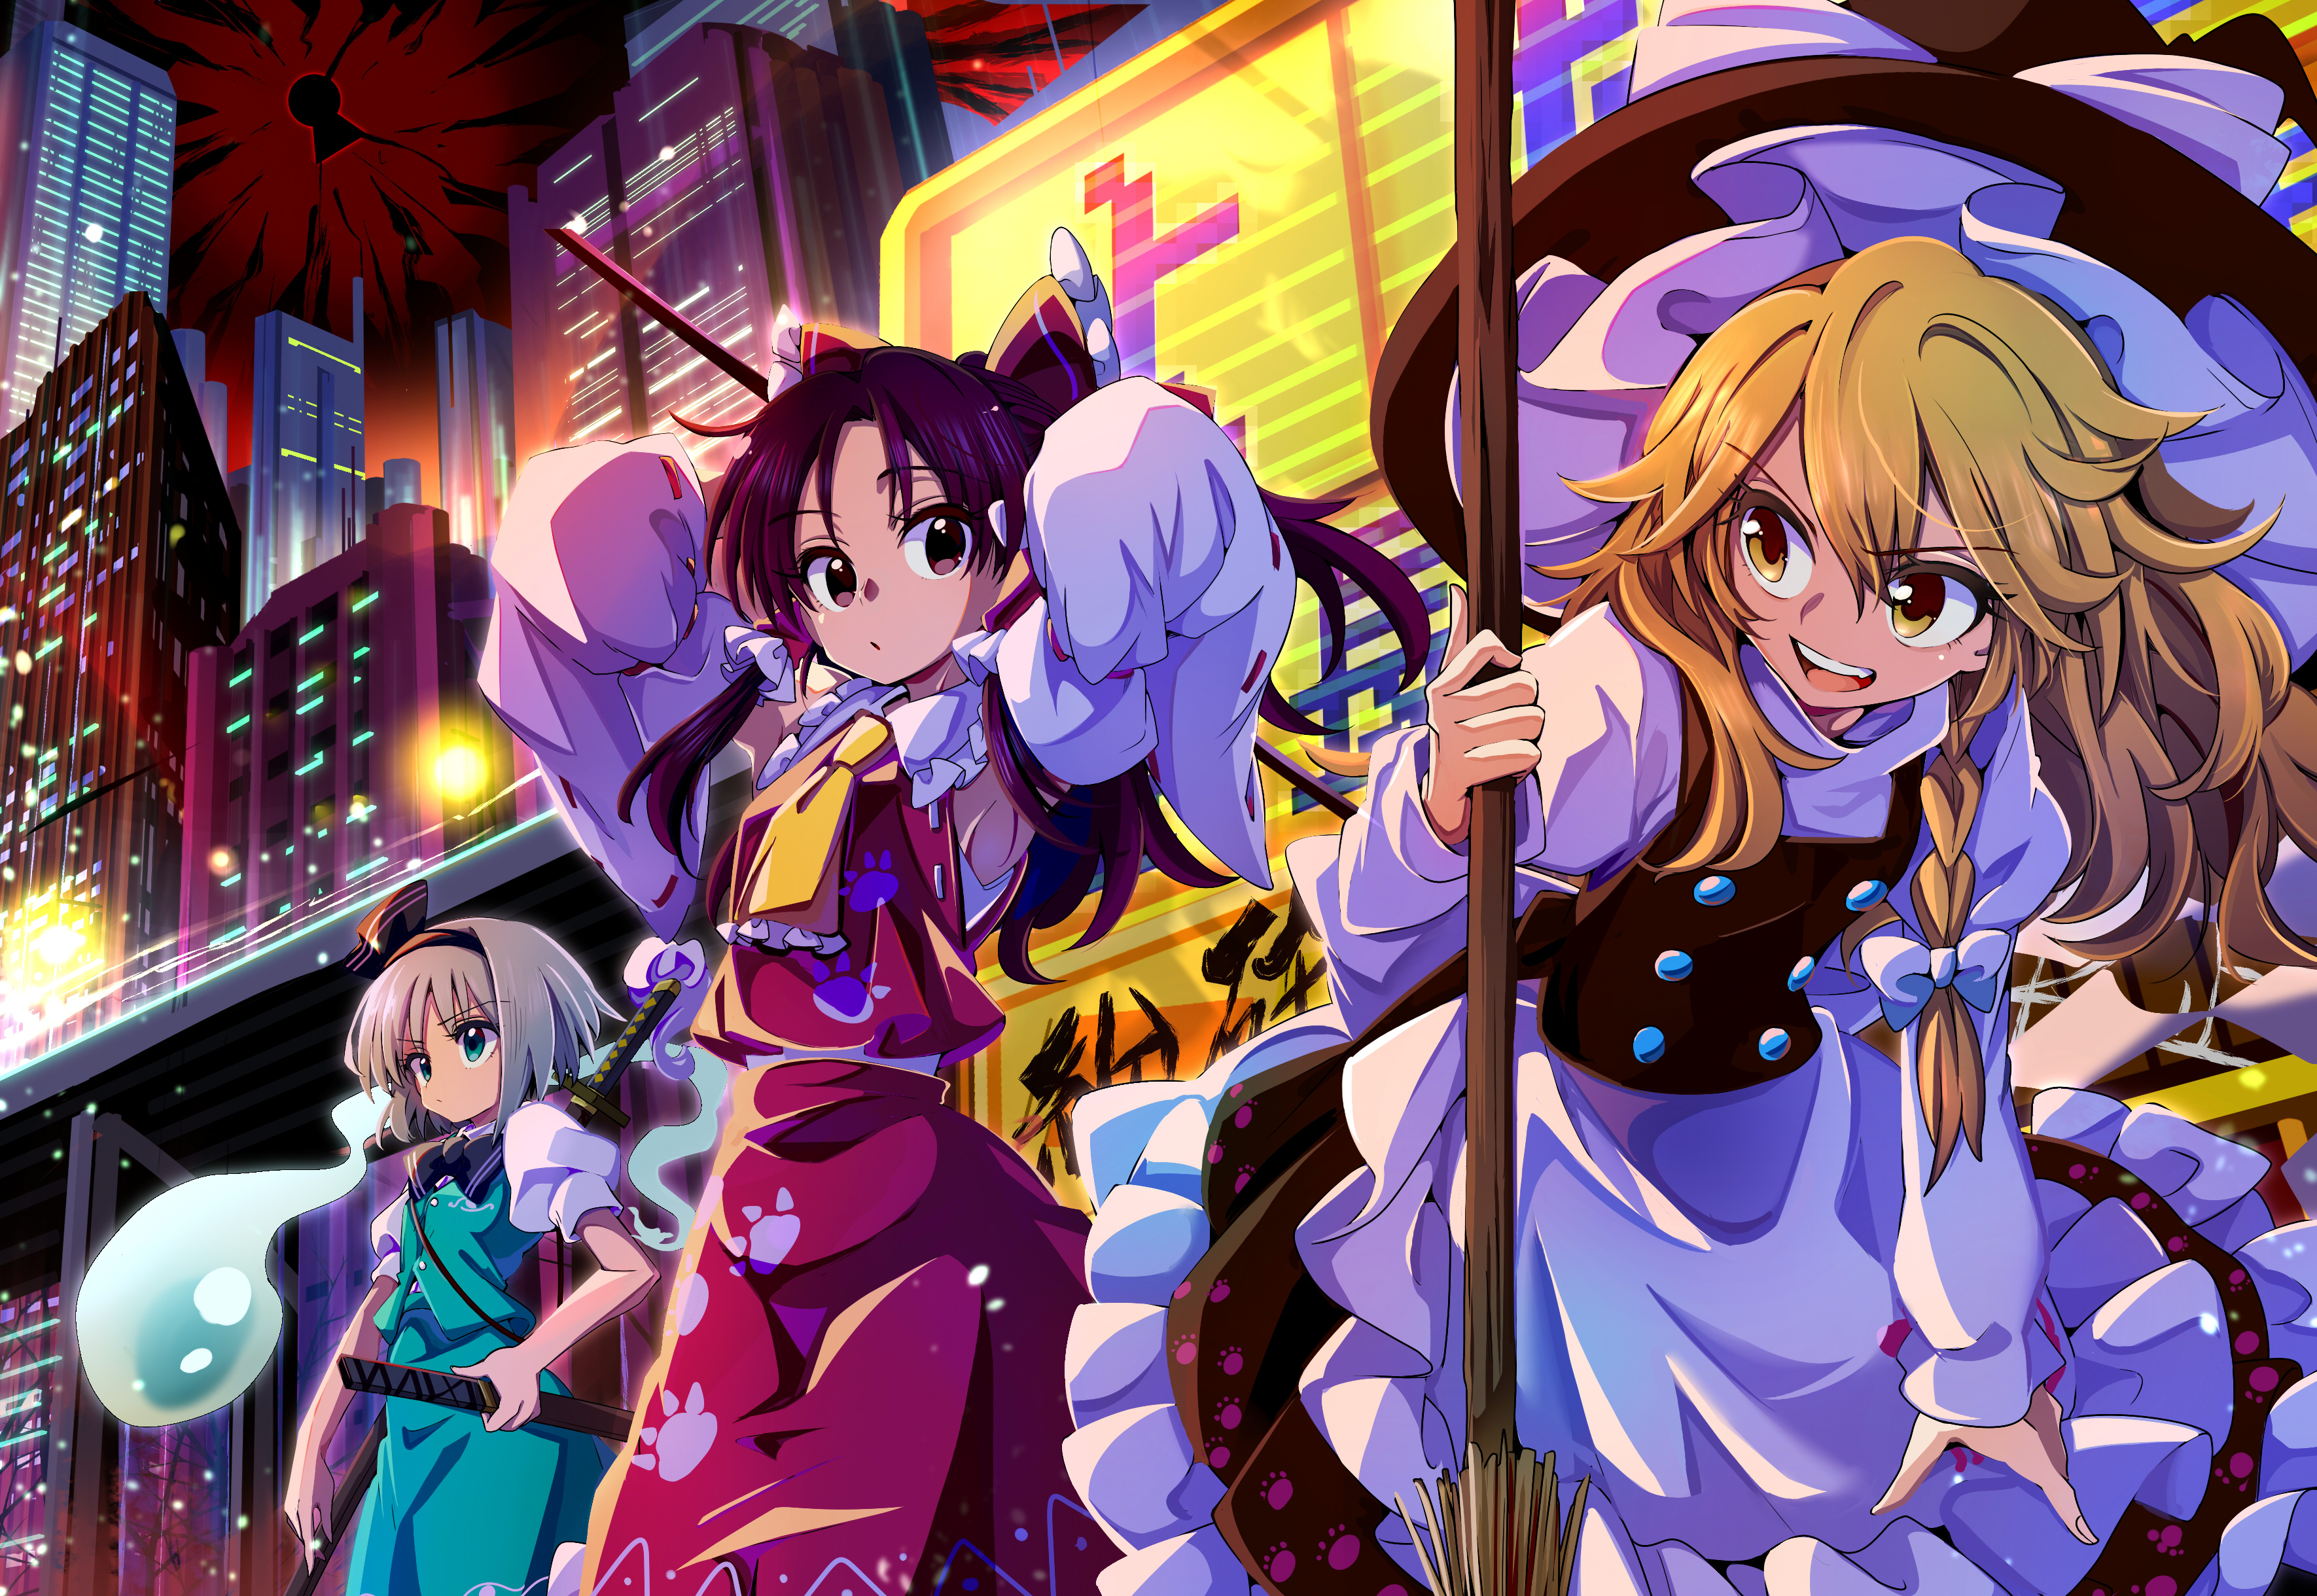 Descarga gratuita de fondo de pantalla para móvil de Animado, Touhou, Youmu Konpaku, Reimu Hakurei, Marisa Kirisame, Myon (Touhou).